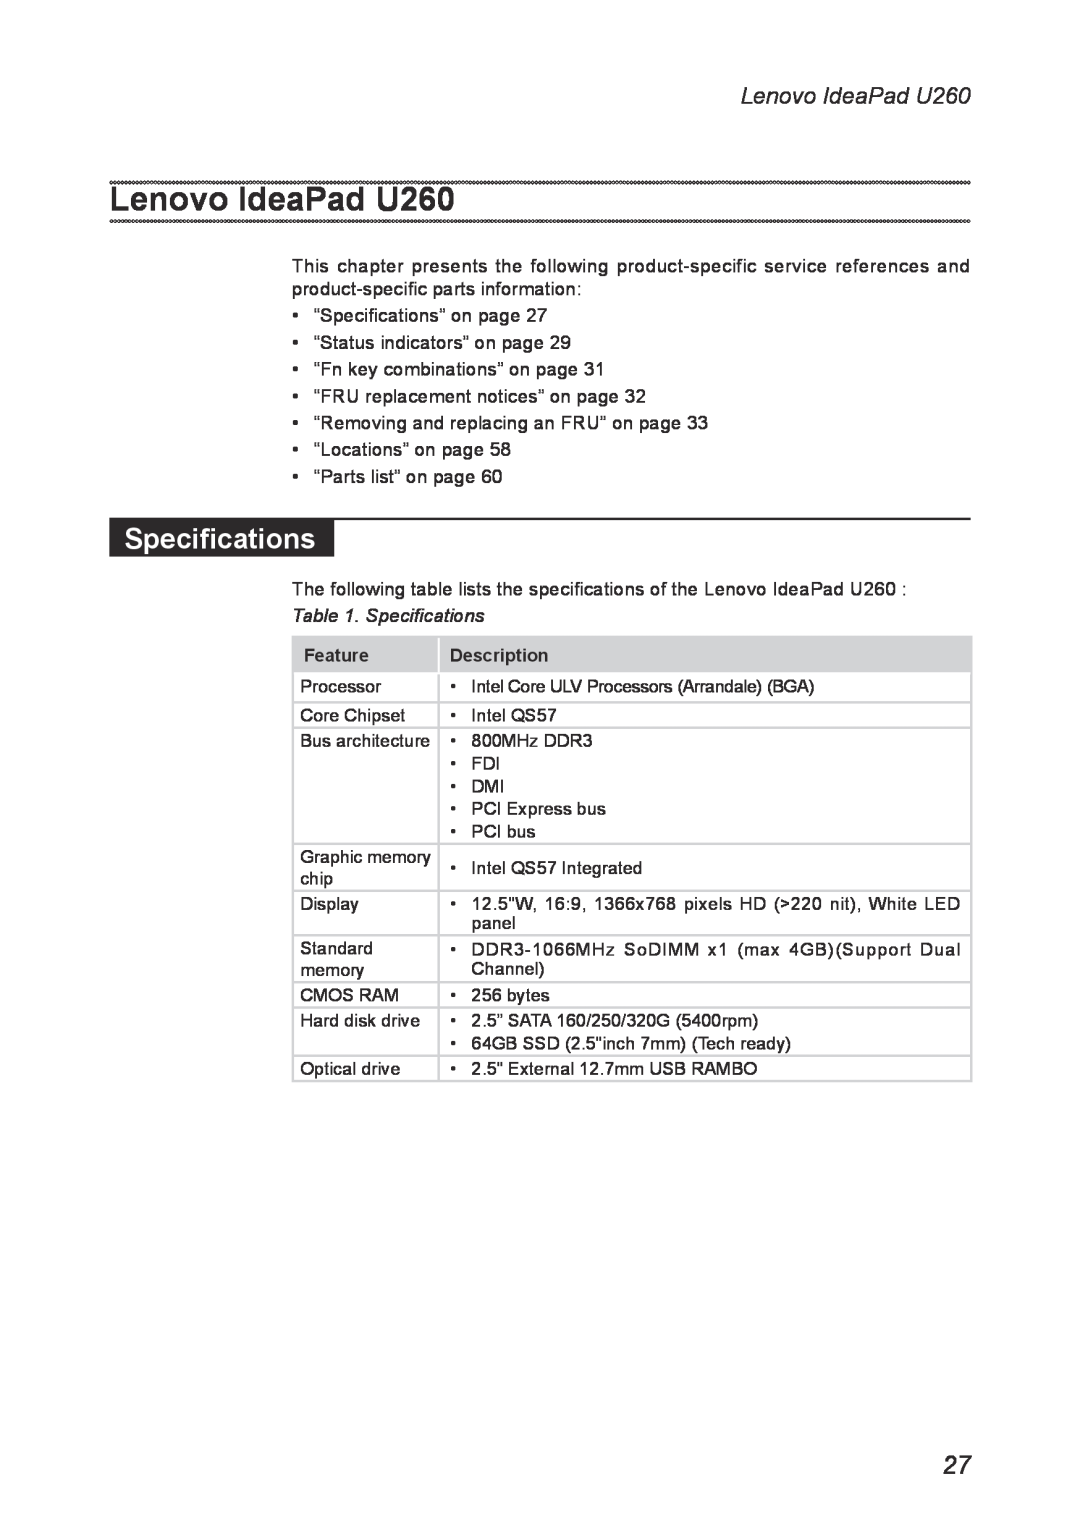 Lenovo manual Lenovo IdeaPad U260, Specifications 